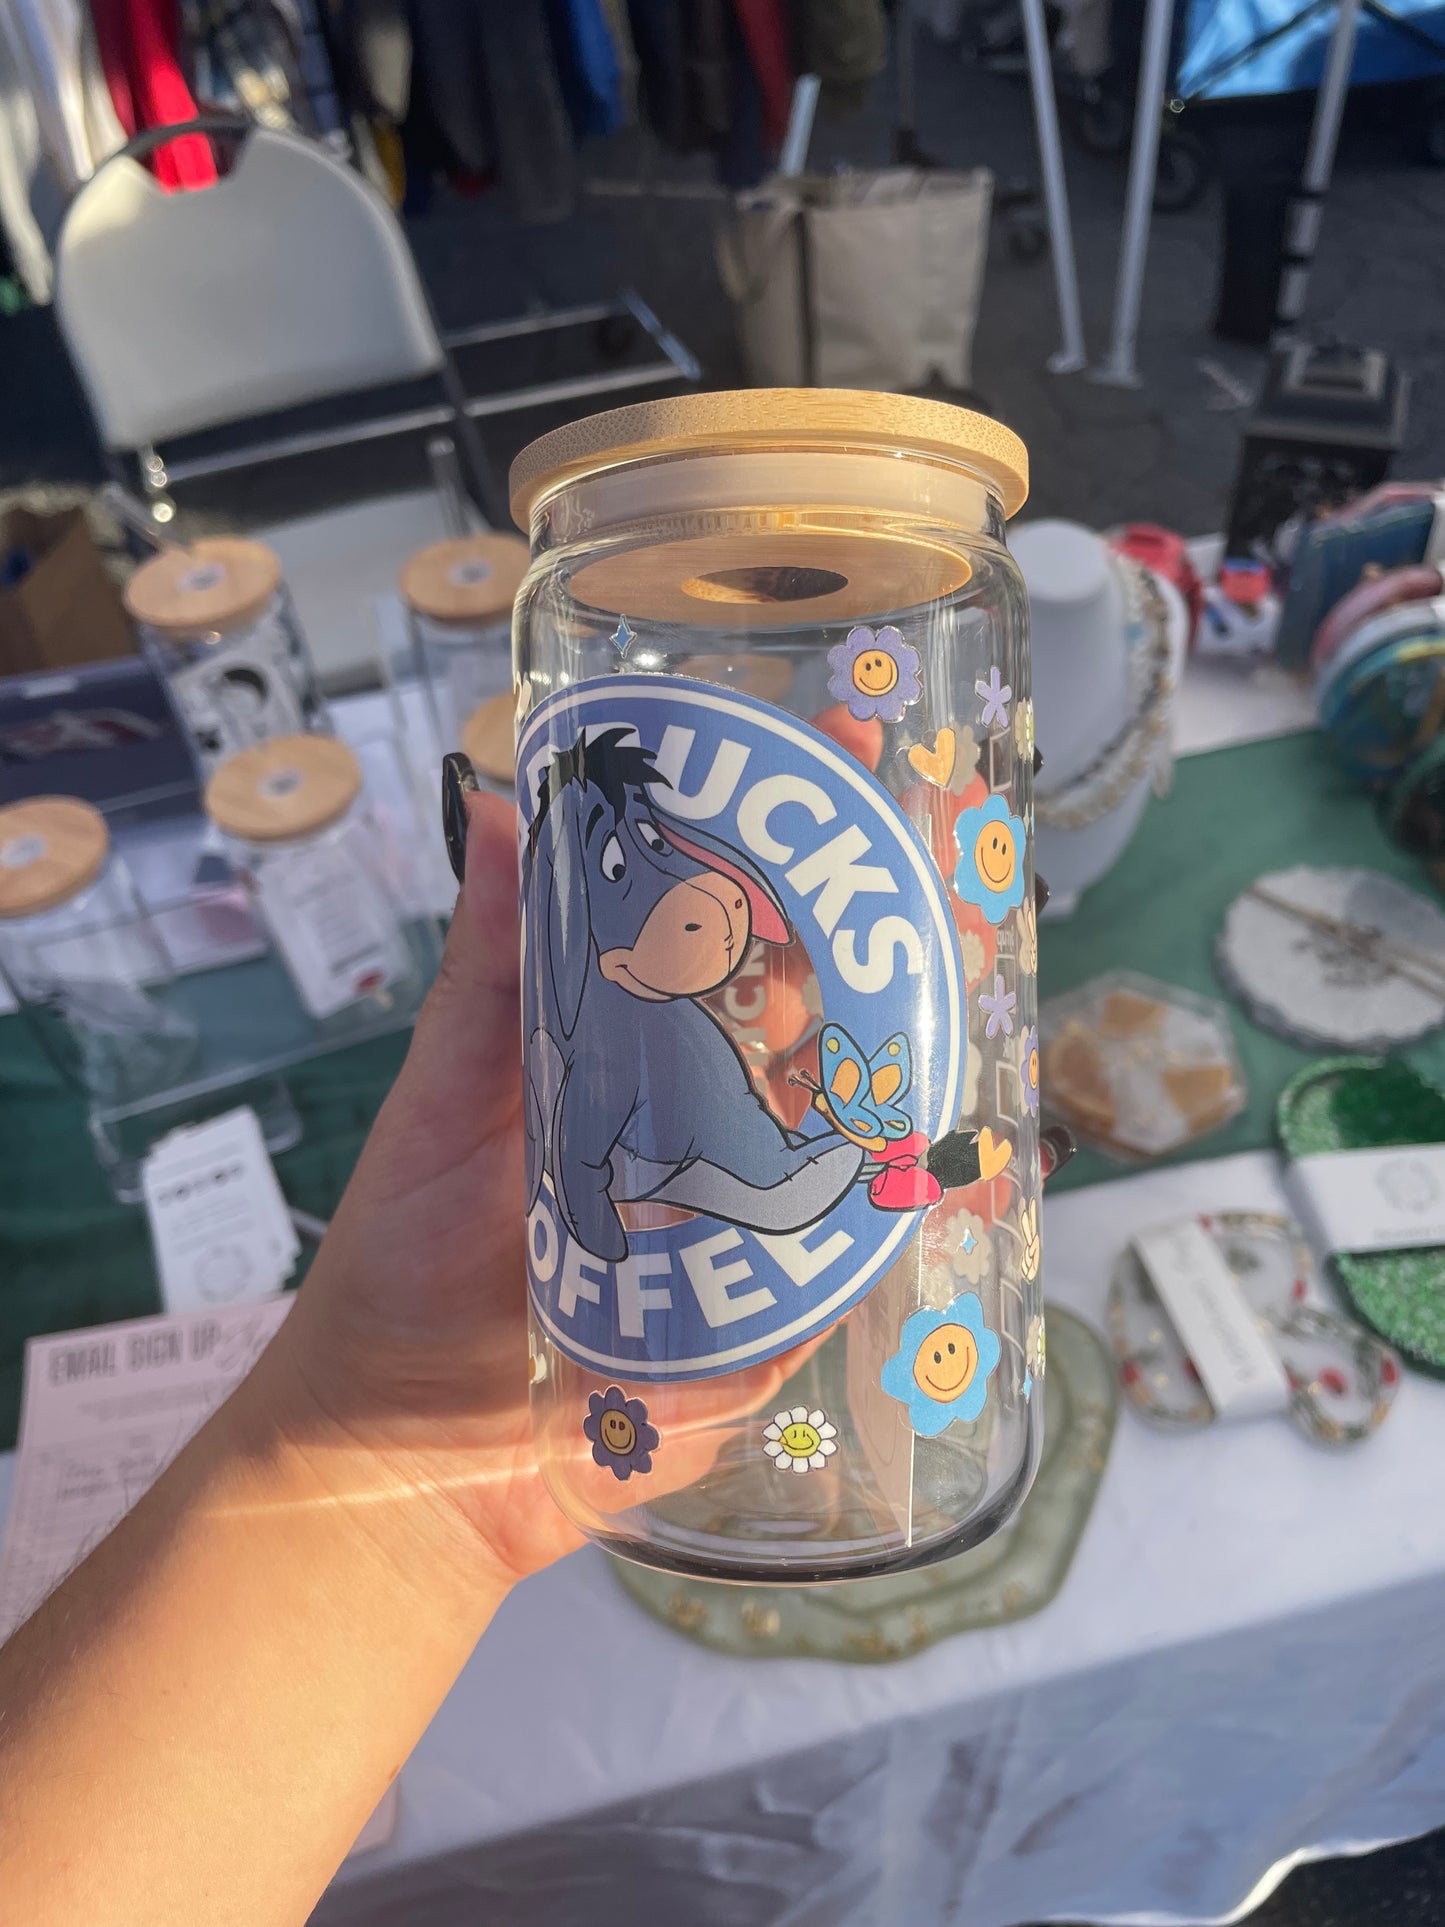 Eeyore glass cup